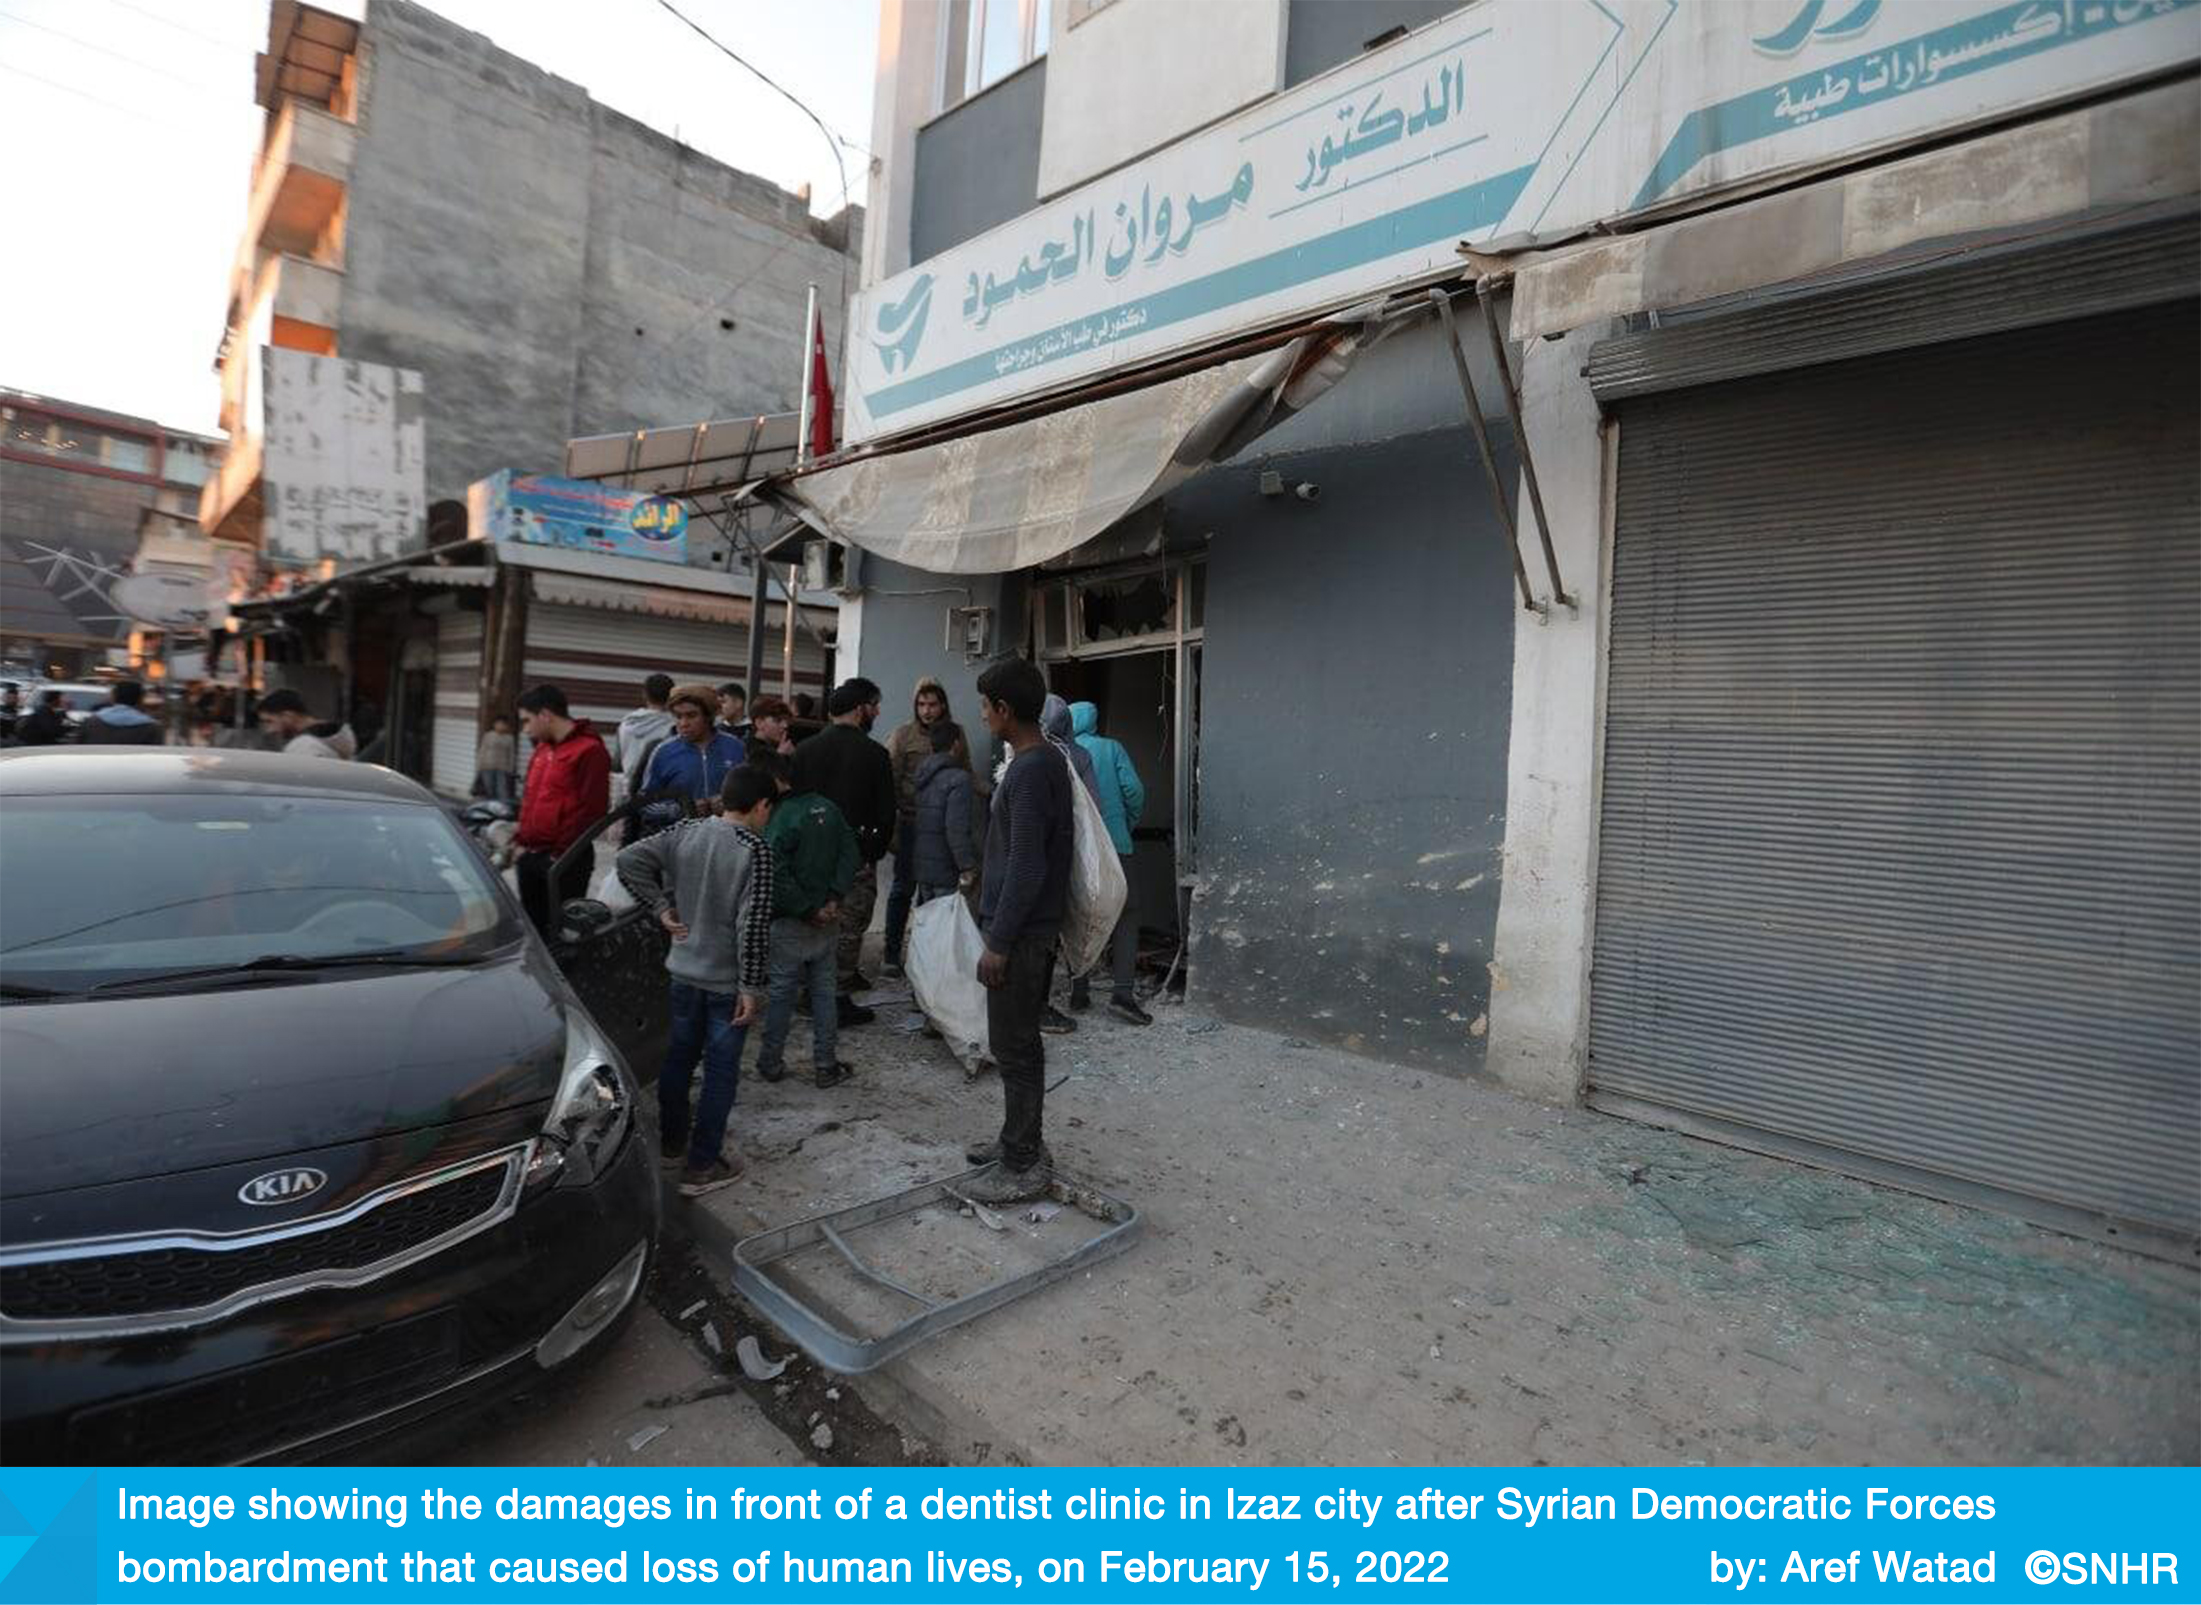 SDF killed civilians in bombing Izaz city in Aleppo in Syria 15-2-2022